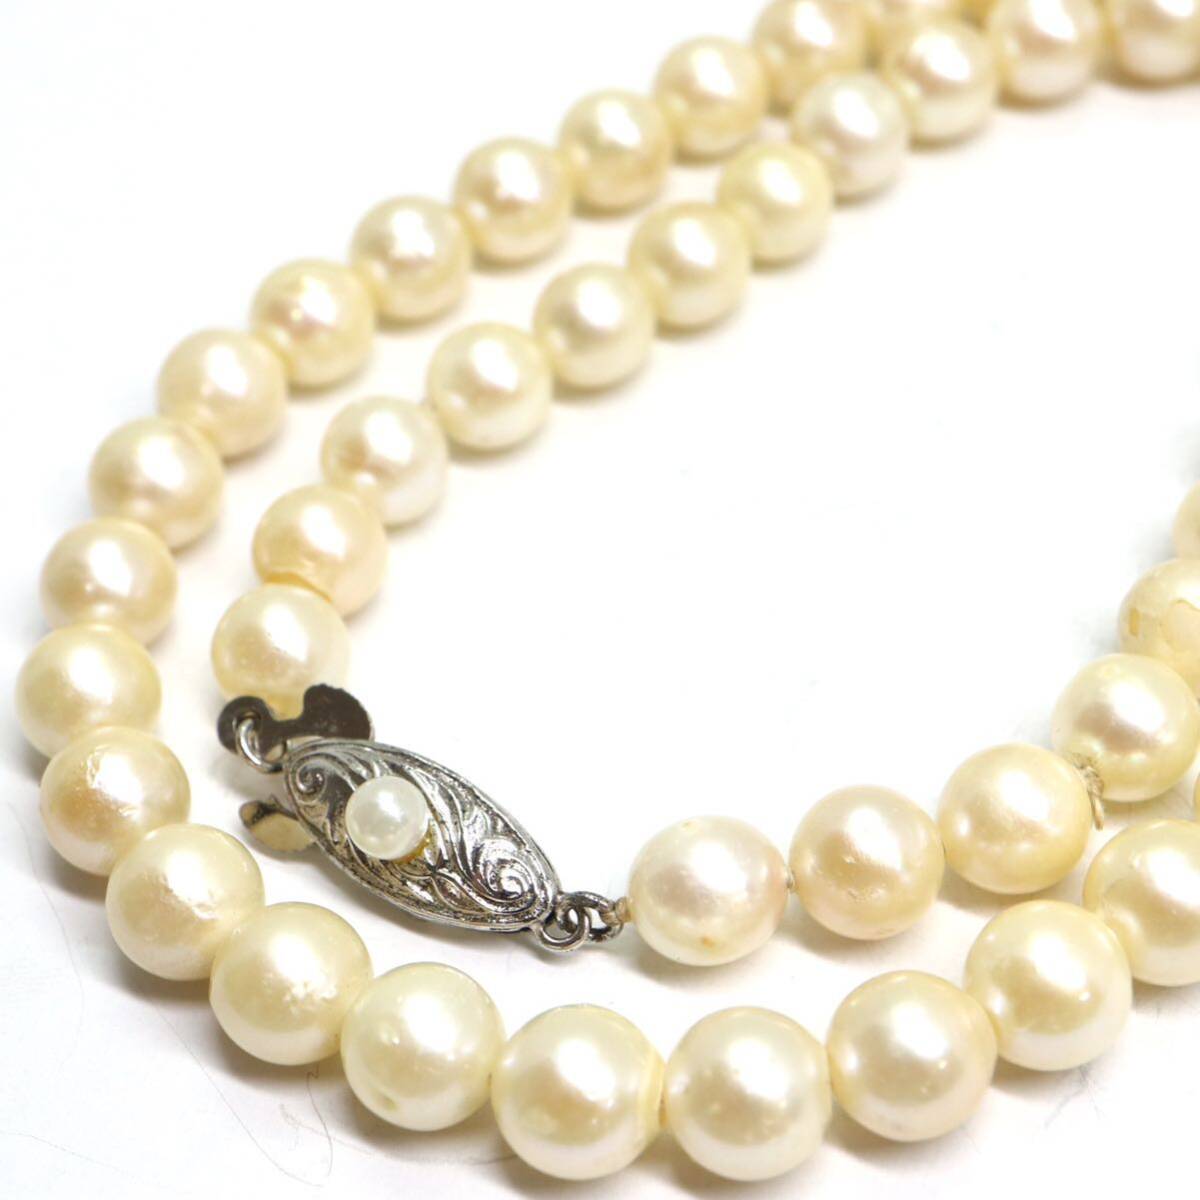 《アコヤ本真珠ネックレス》A 約6.0-6.5mm珠 21.0g 約37cm pearl necklace ジュエリー jewelry DB0/DBの画像1